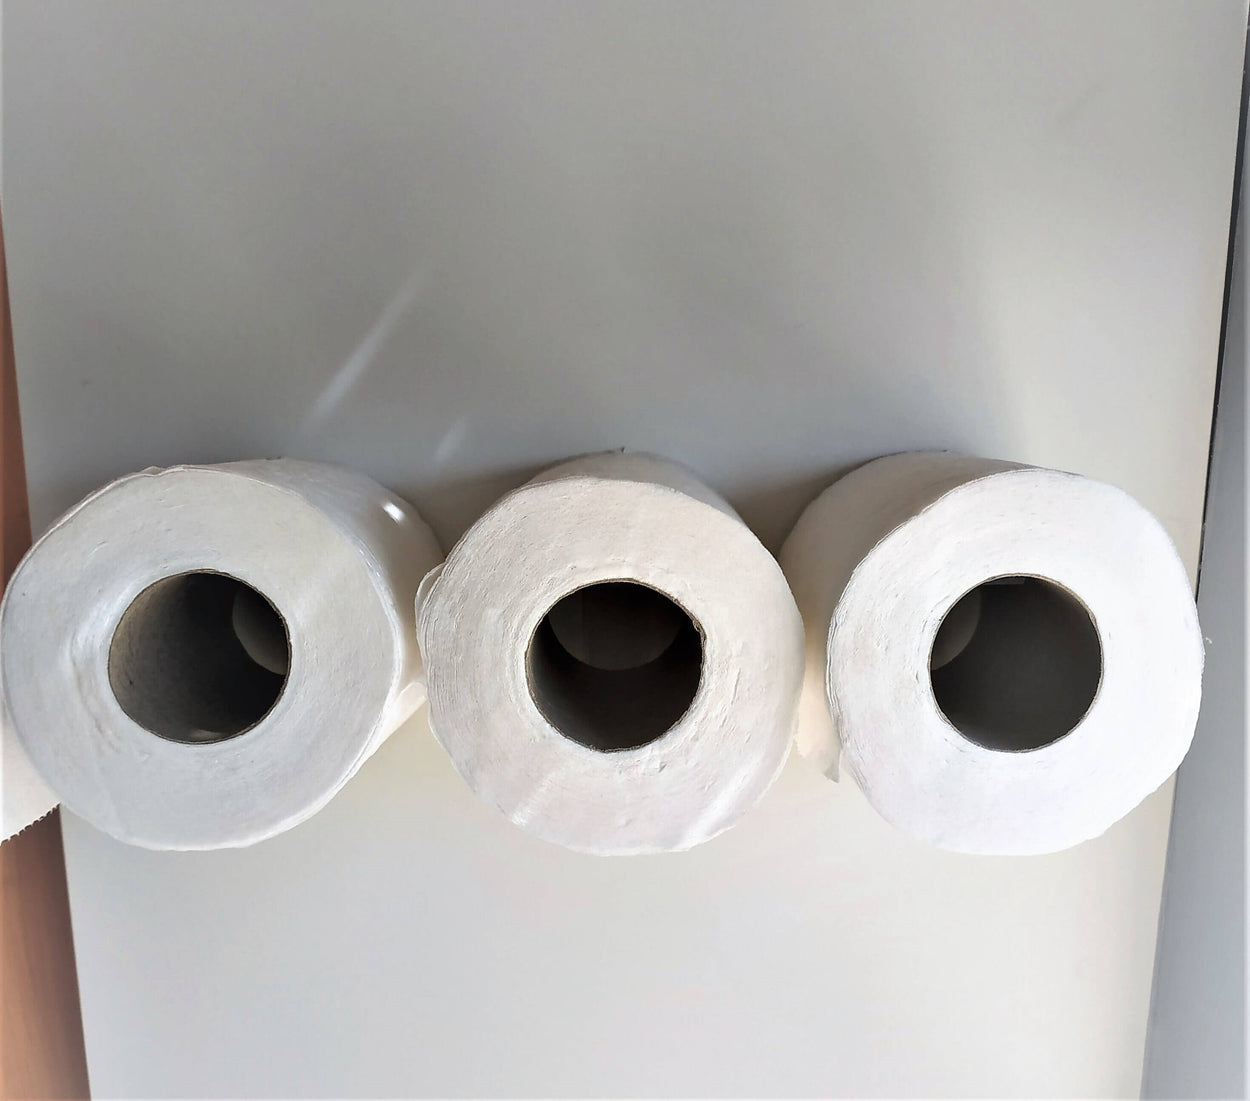 Funny toilet paper rolls holder - Topl/Cheburashka